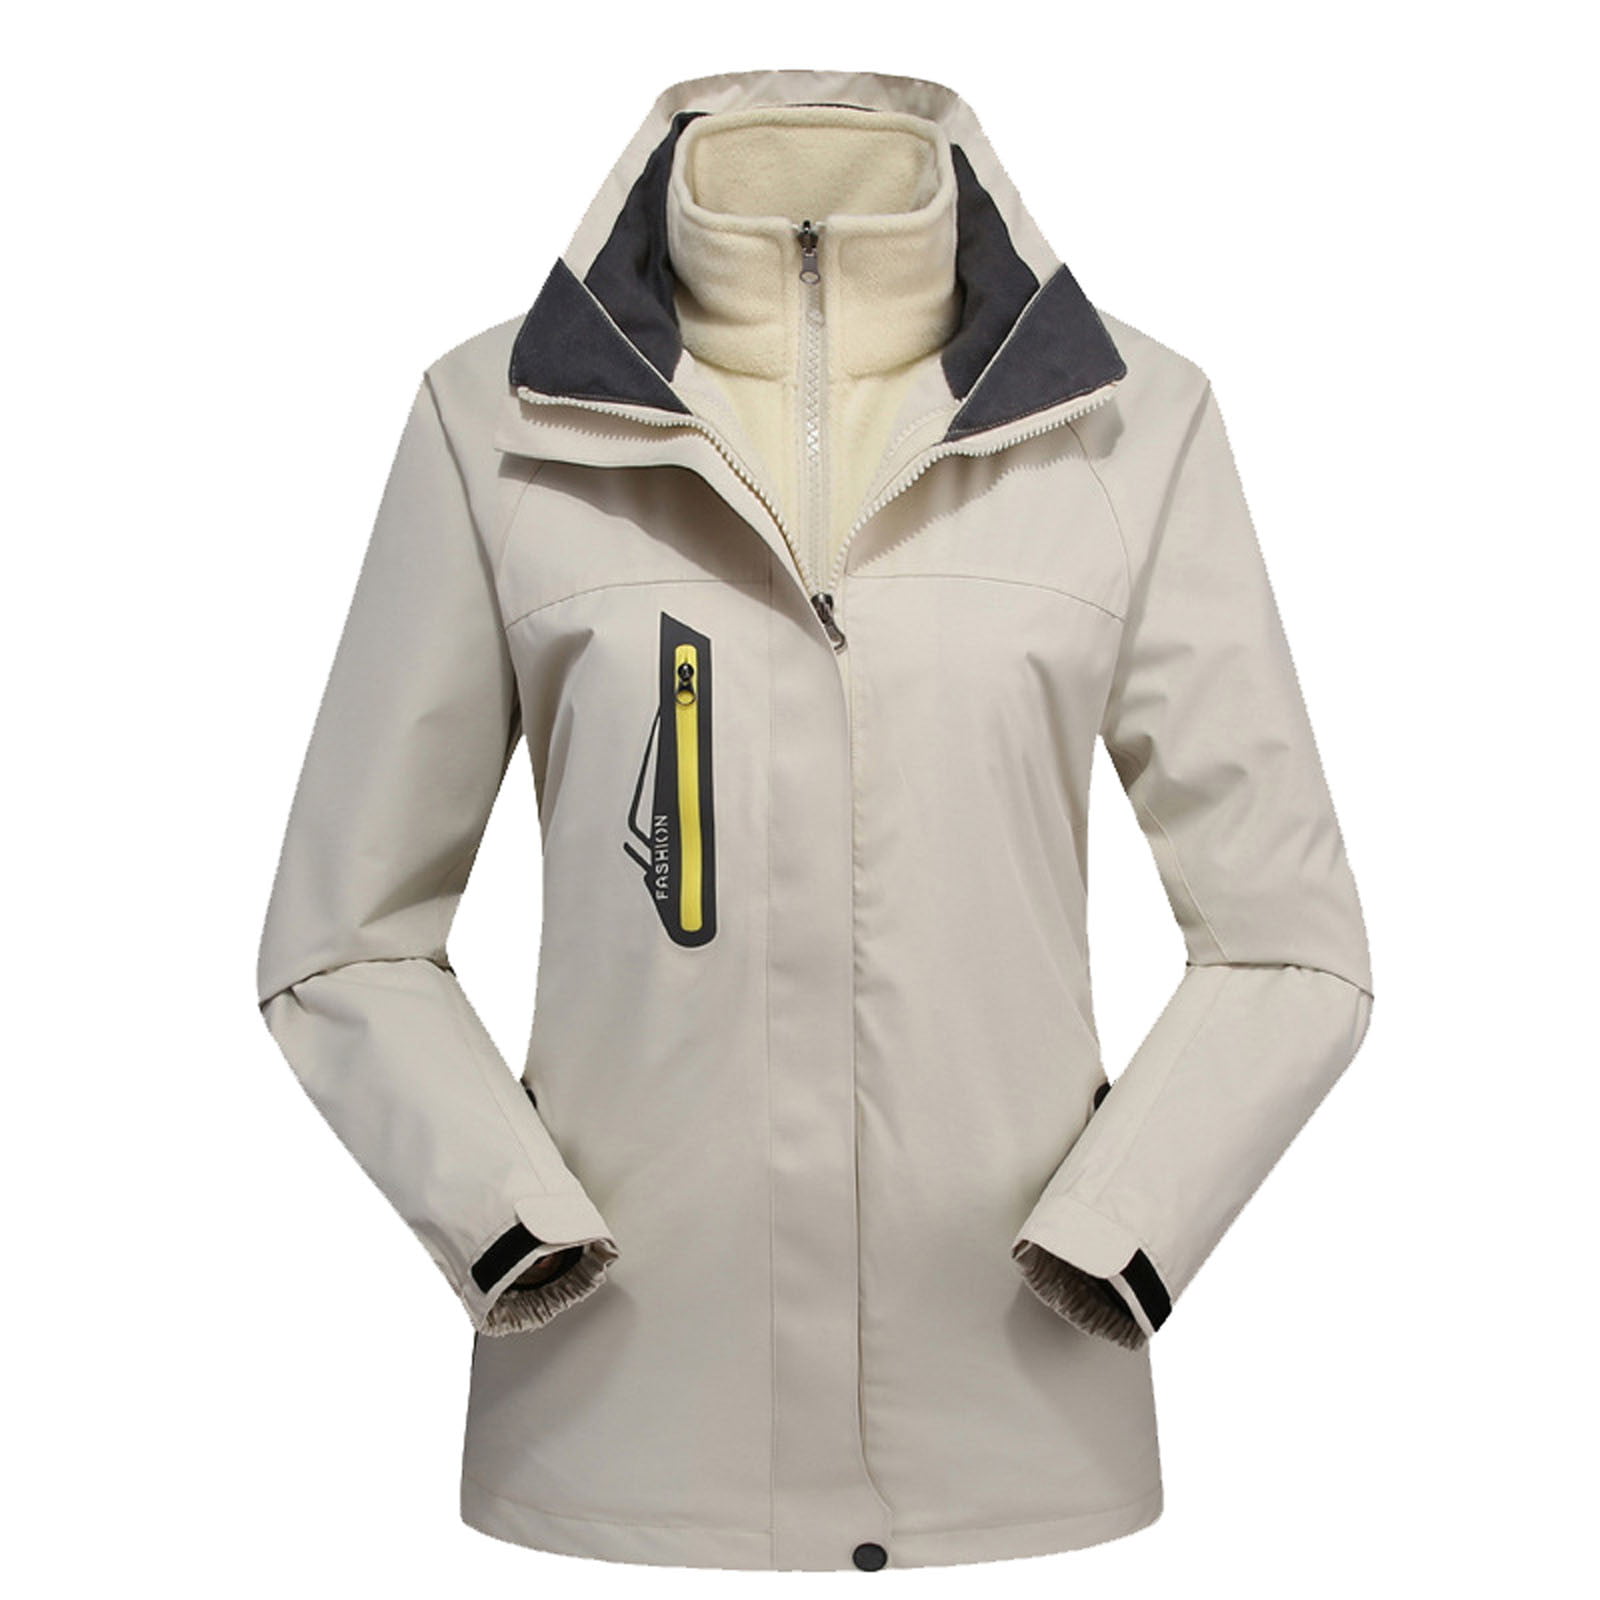 Women's Mountain Waterproof Ski Jacket Windproof Rain Windbreaker Winter Warm Hooded Snow Coat 